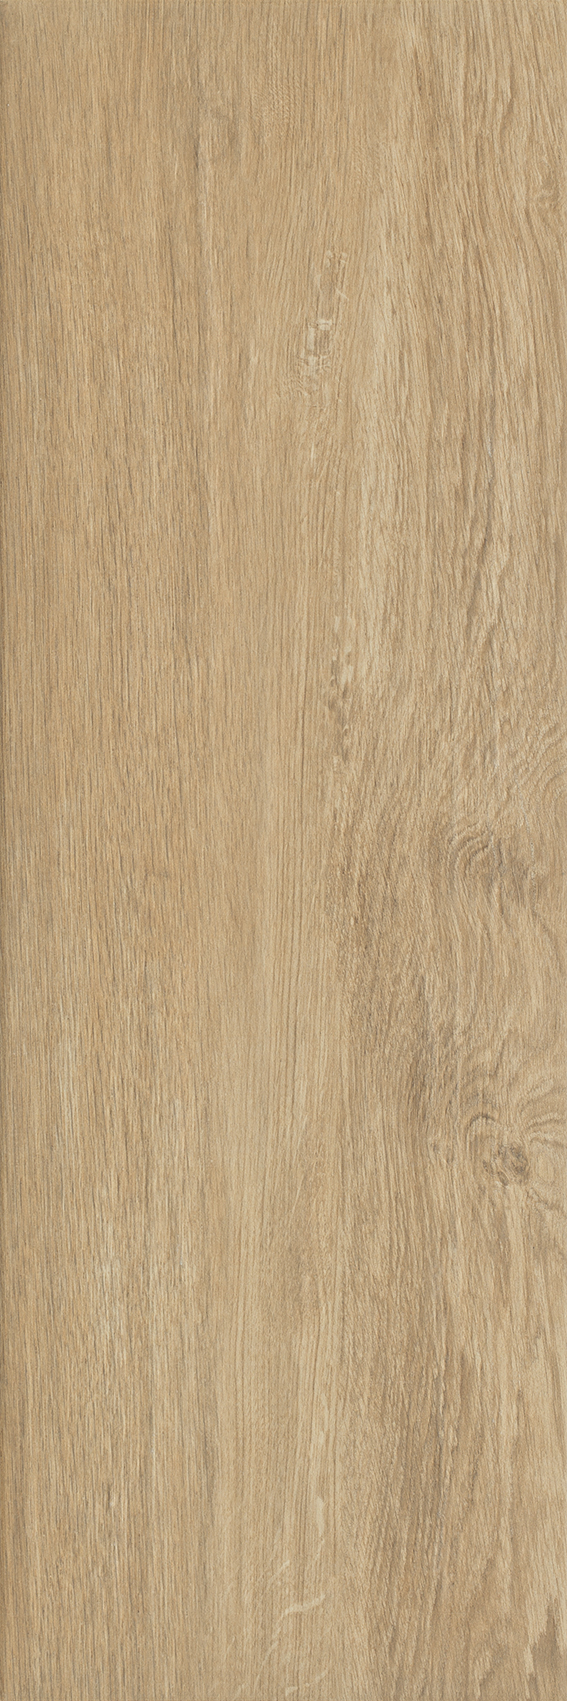 Dlažba Wood Basic Naturale 20x60 cm